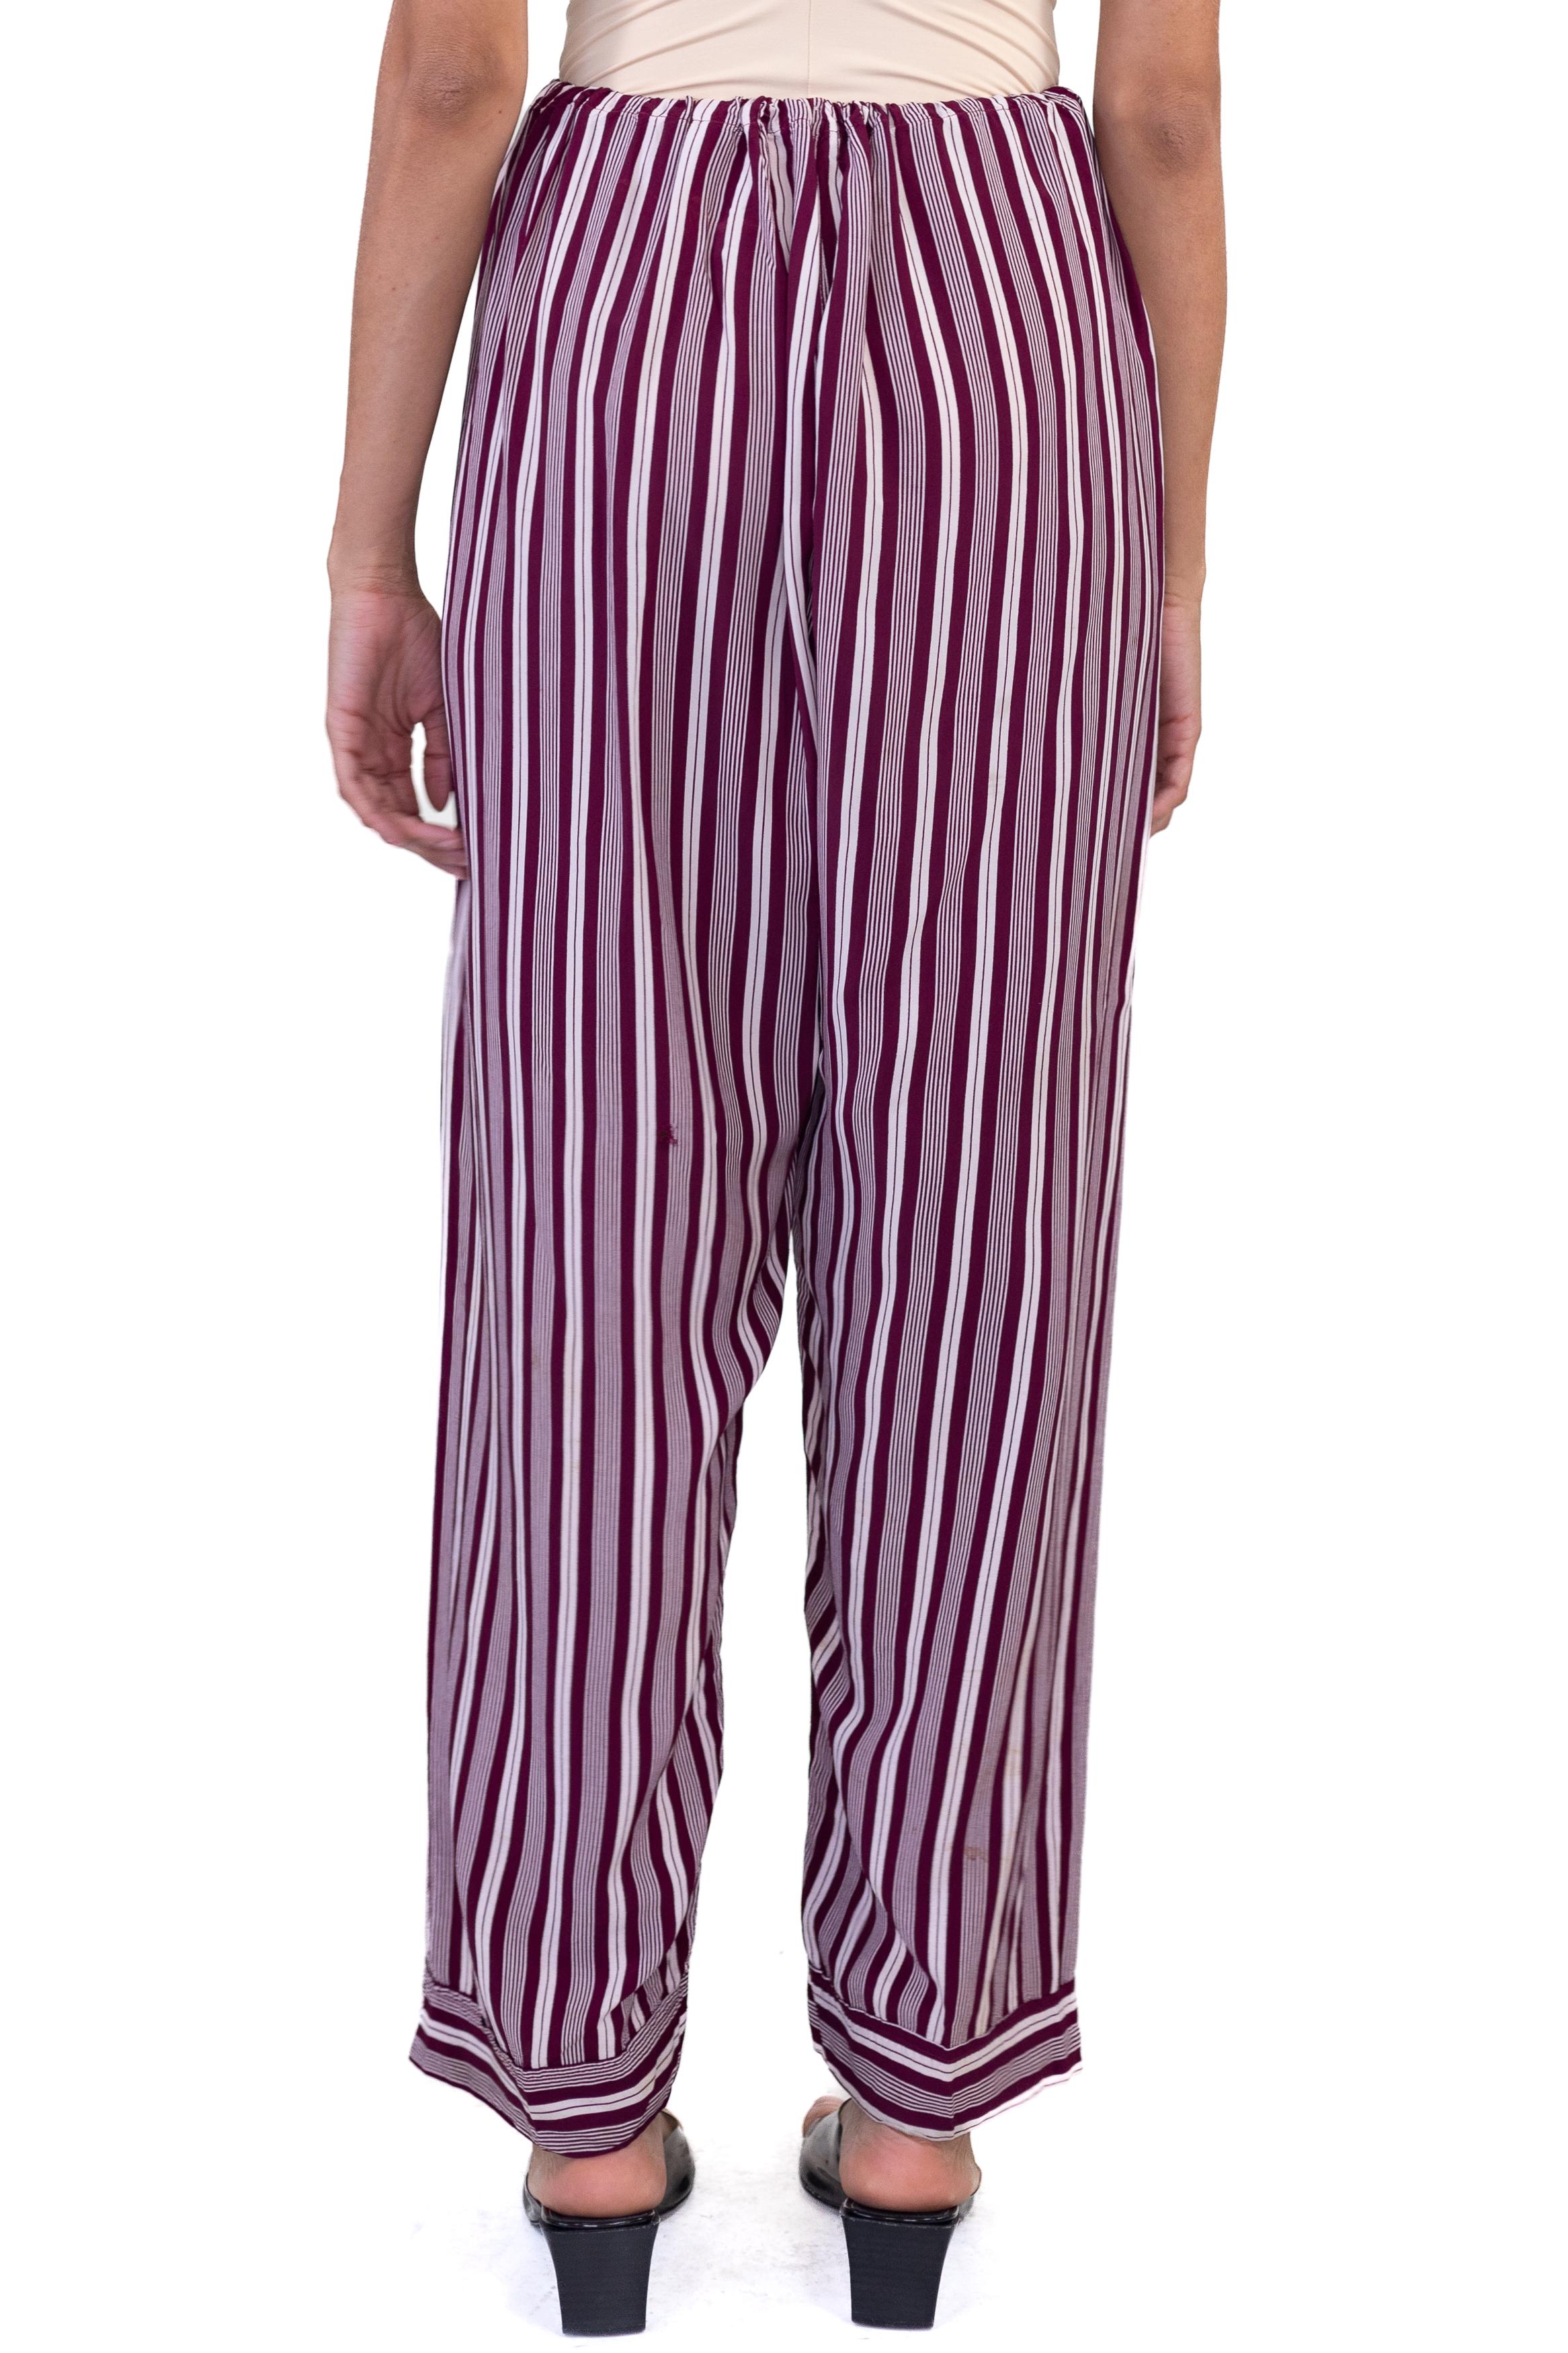 1940S Burgundy Striped Rayon Pajama Pants For Sale 1